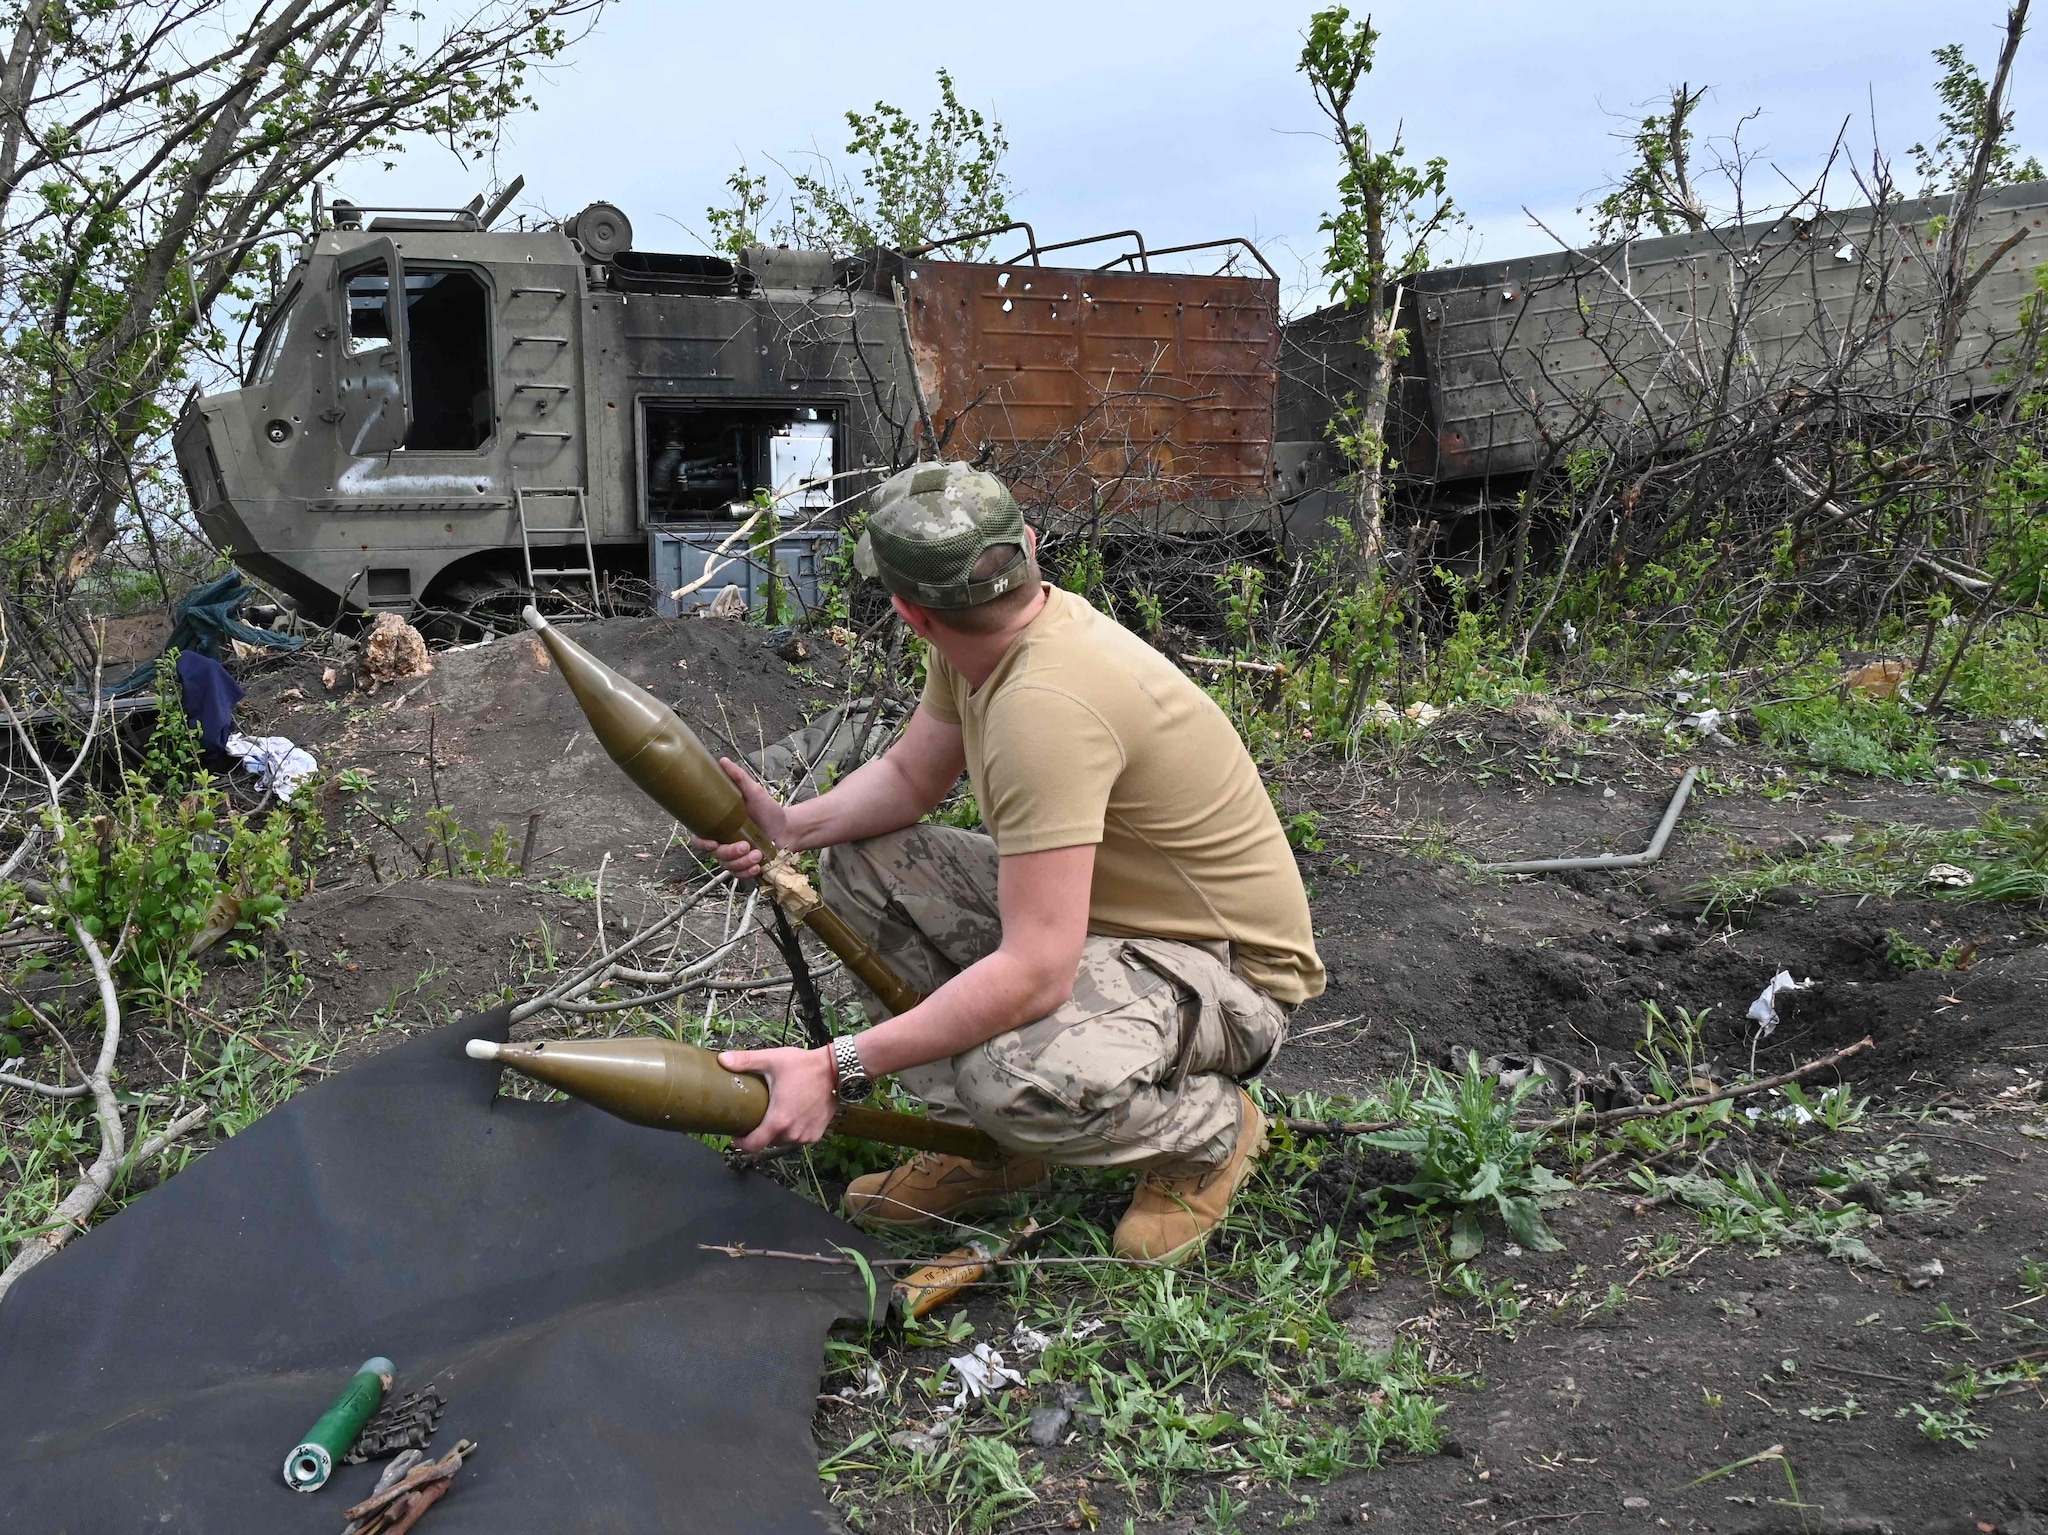 Un militare ucraino ispeziona munizioni abbandonate accanto a un veicolo militare russo distrutto vicino al villaggio di Mala Rogan a est di Kharkiv, nel mezzo dell’invasione russa dell’Ucraina. (Photo by SERGEY BOBOK / AFP)